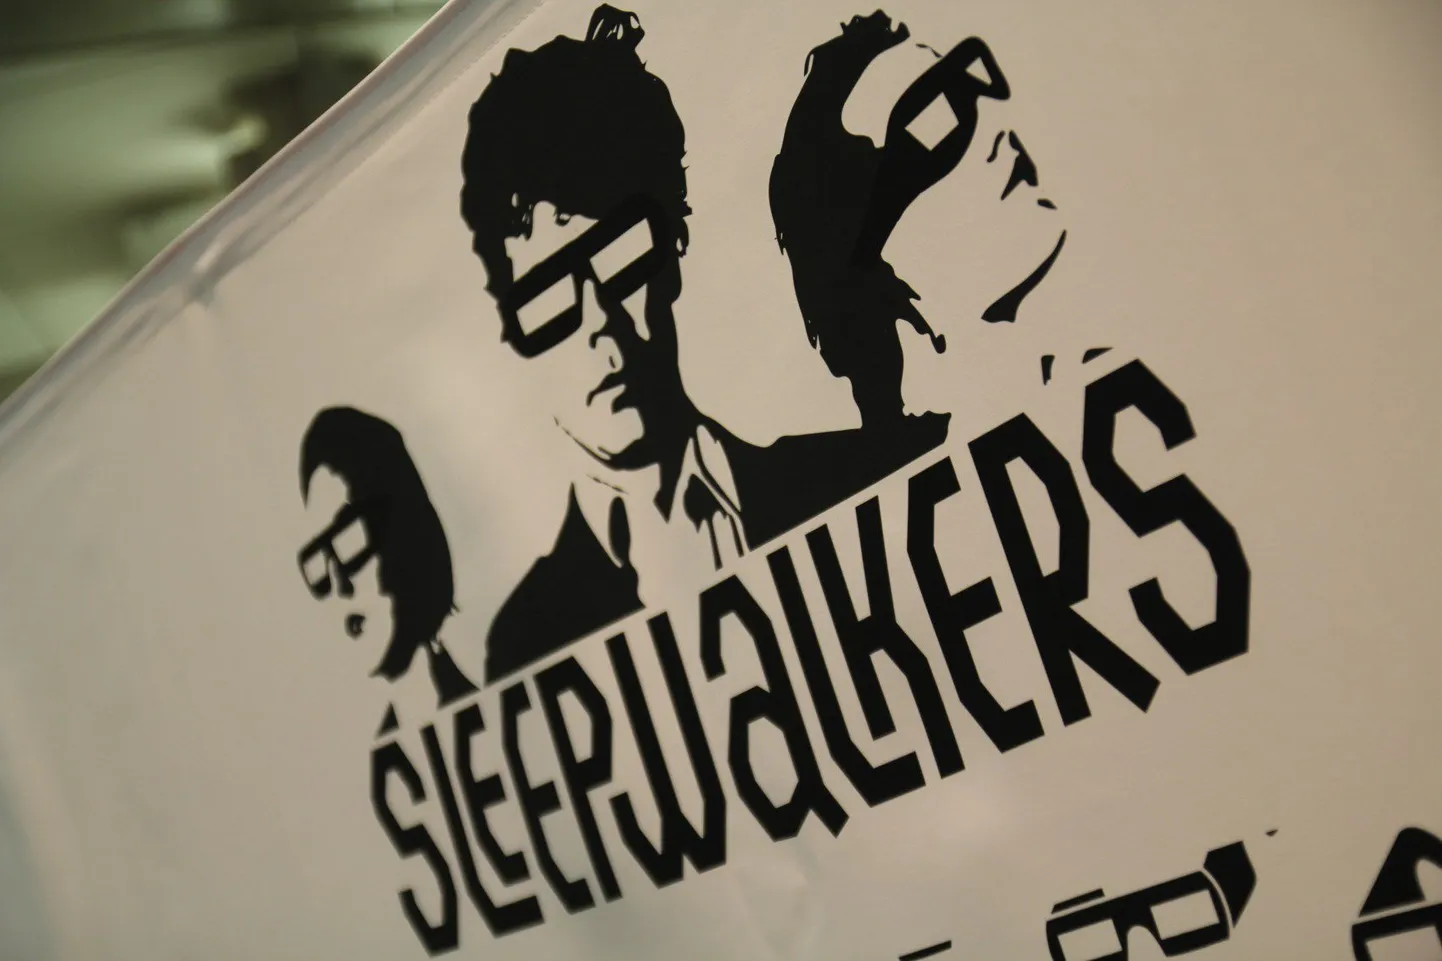 Логотип кинофестиваля Sleepwalkers.